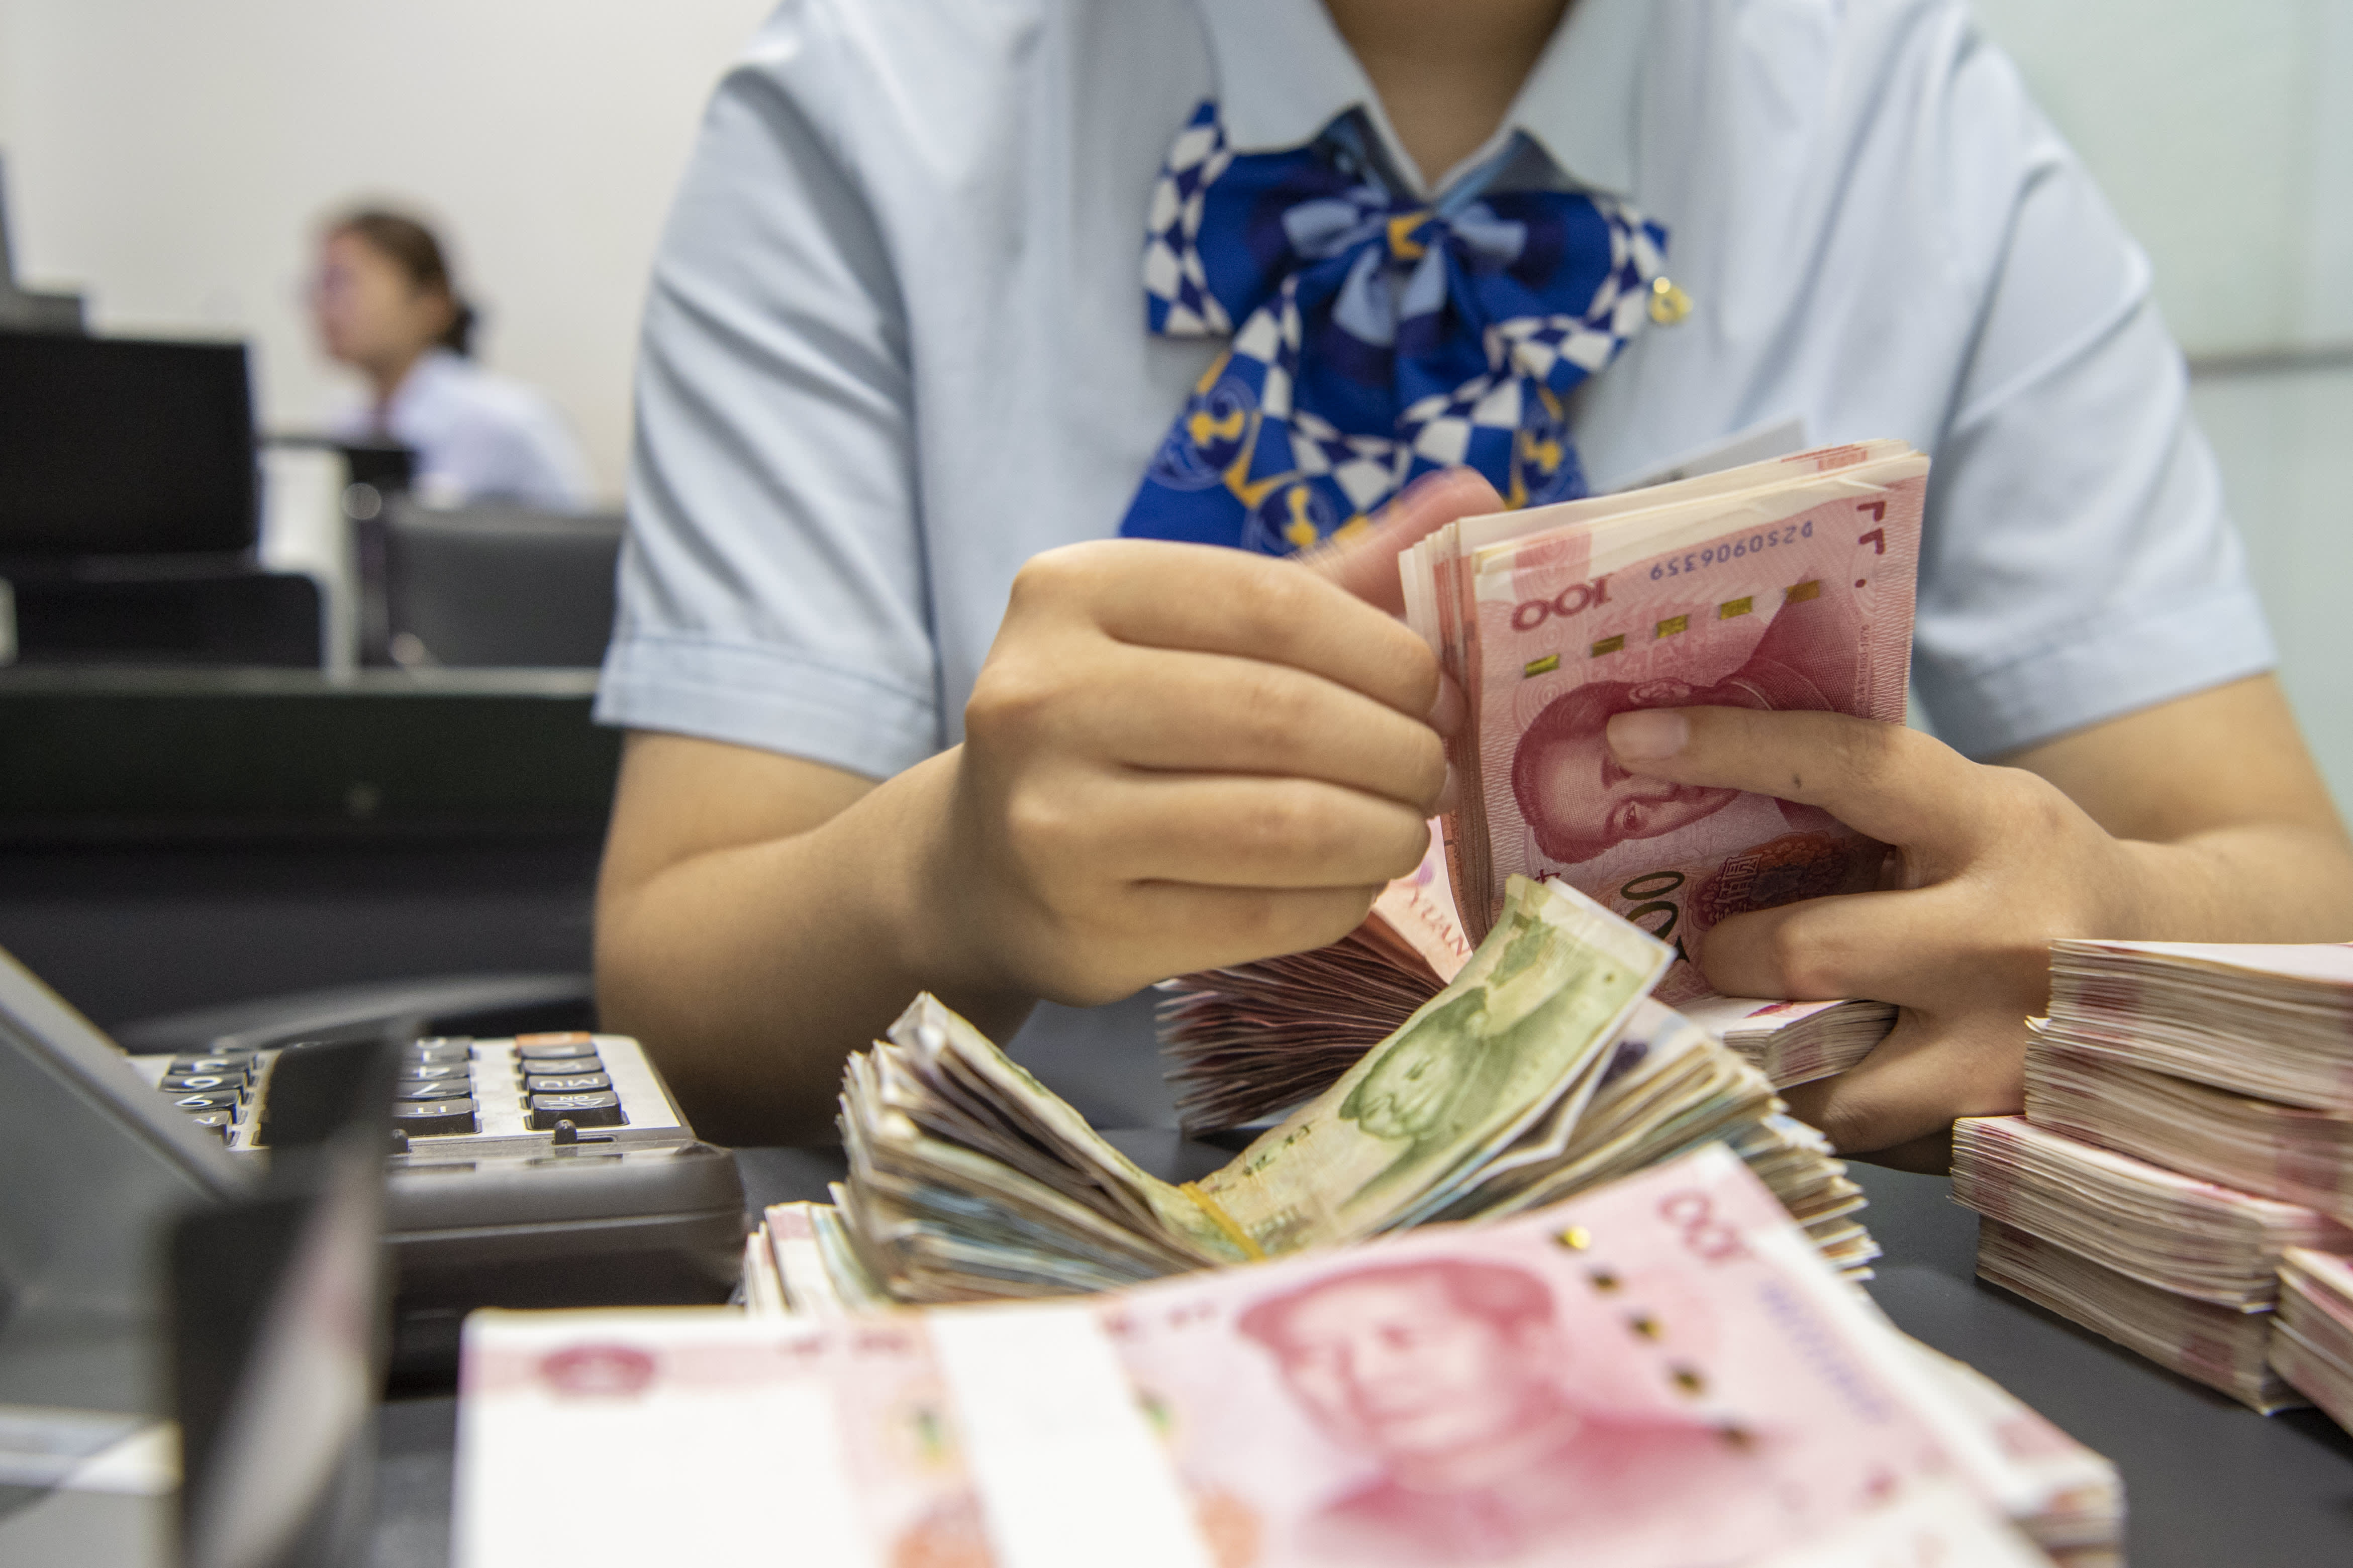 Кина појачава финансирање некретнина са првим смањењем стопе на првокласне кредите од јуна